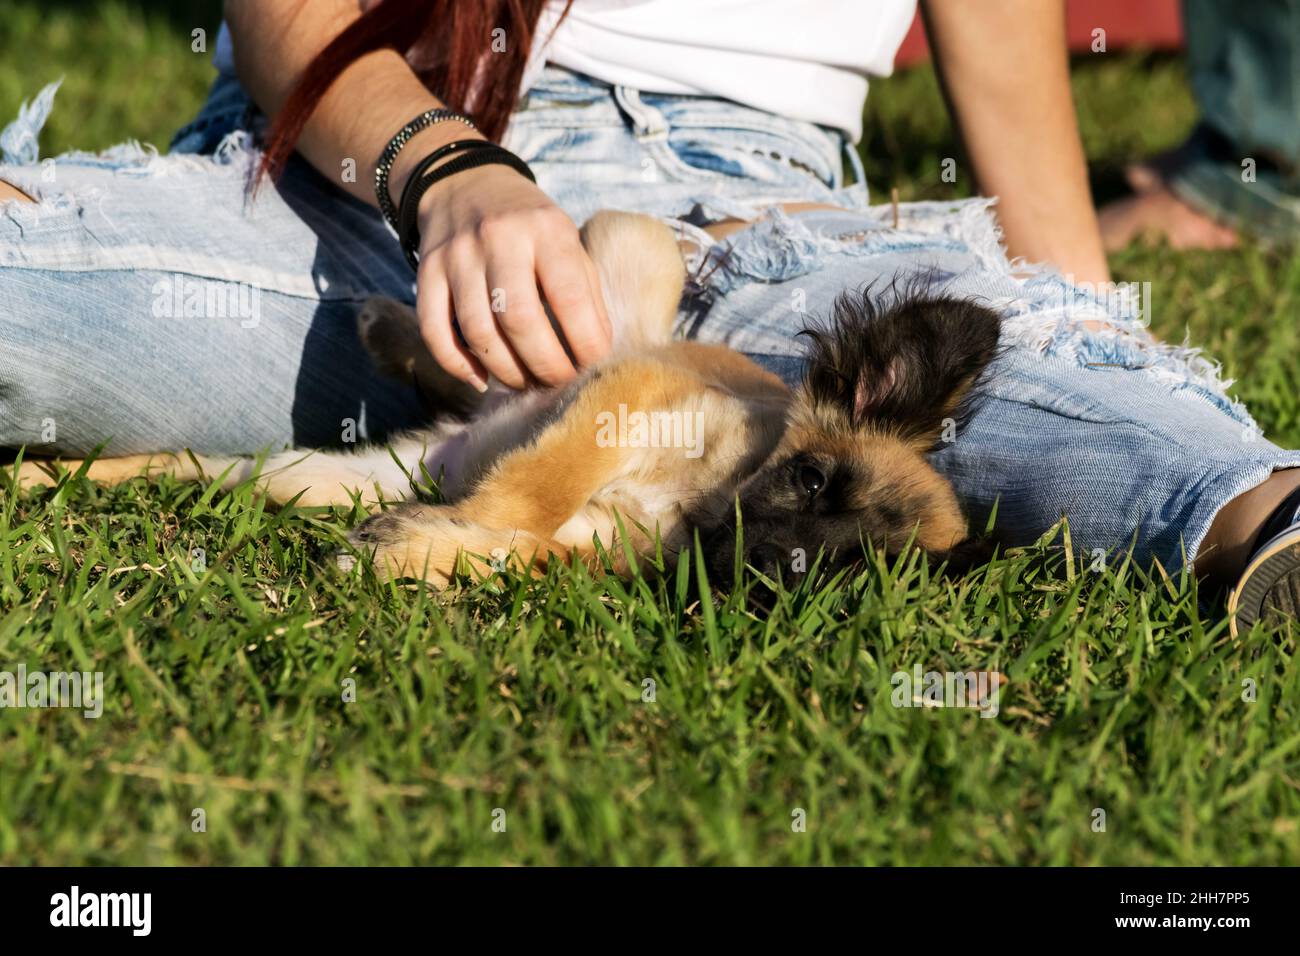 Kleiner pelziger Halbbrüter brauner Hund, der auf dem Gras zwischen den offenen Beinen einer weiblichen Person mit leichten Jeans liegt, wird der Hund auf den Bauch gestreichelt Stockfoto